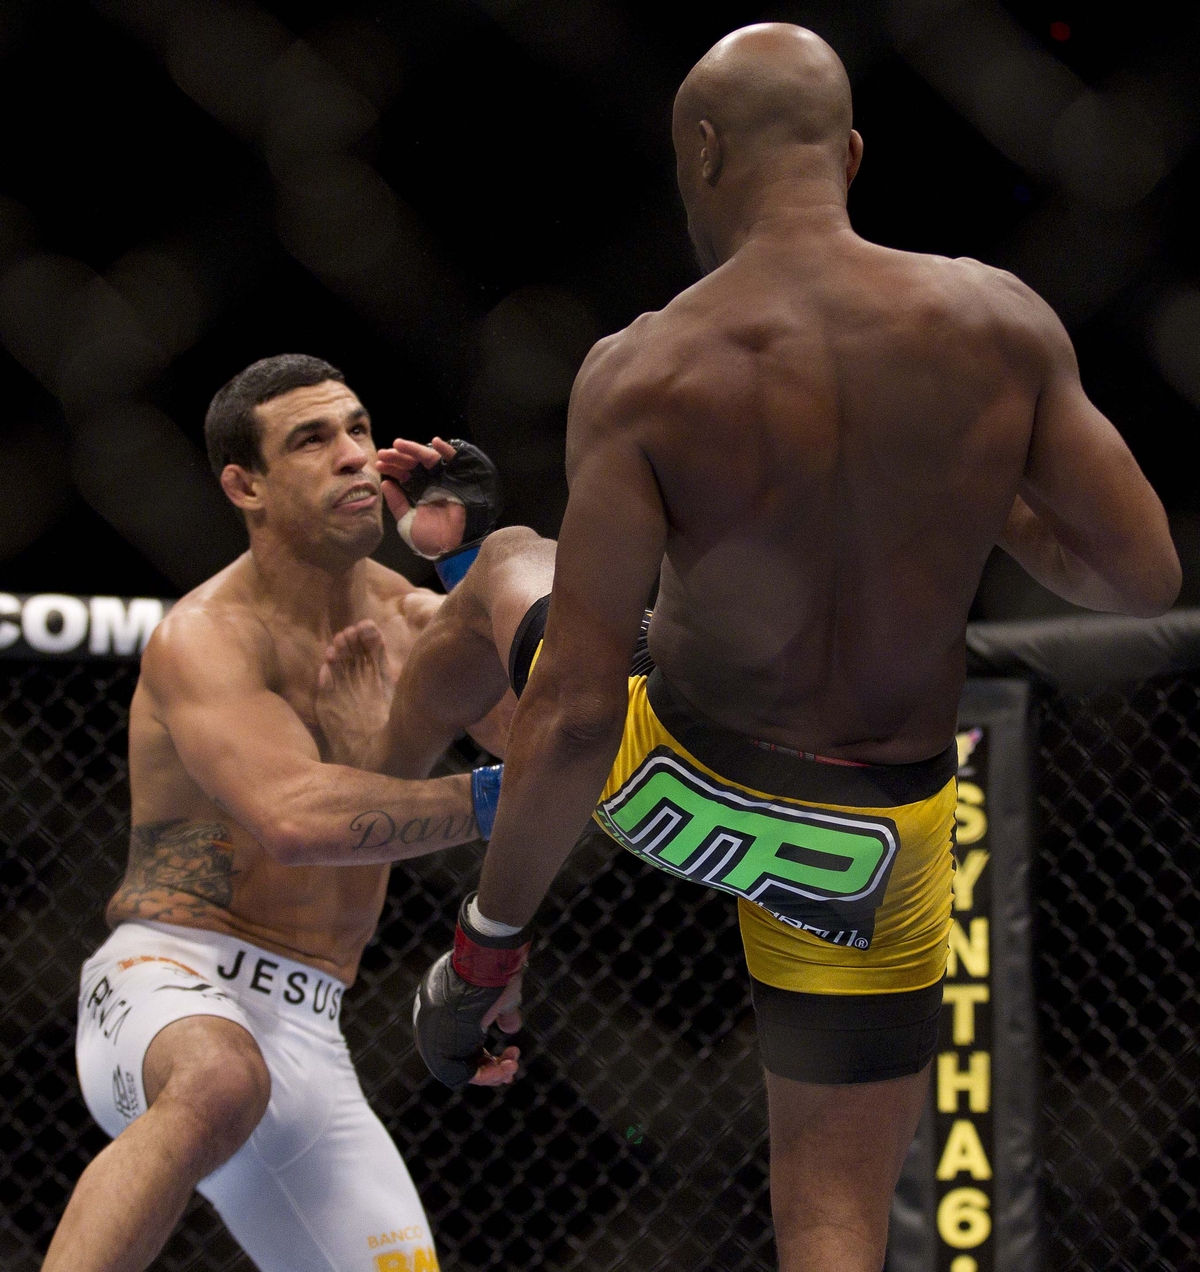 video review : Anderson Silva versus Vitor Belfort at UFC 126